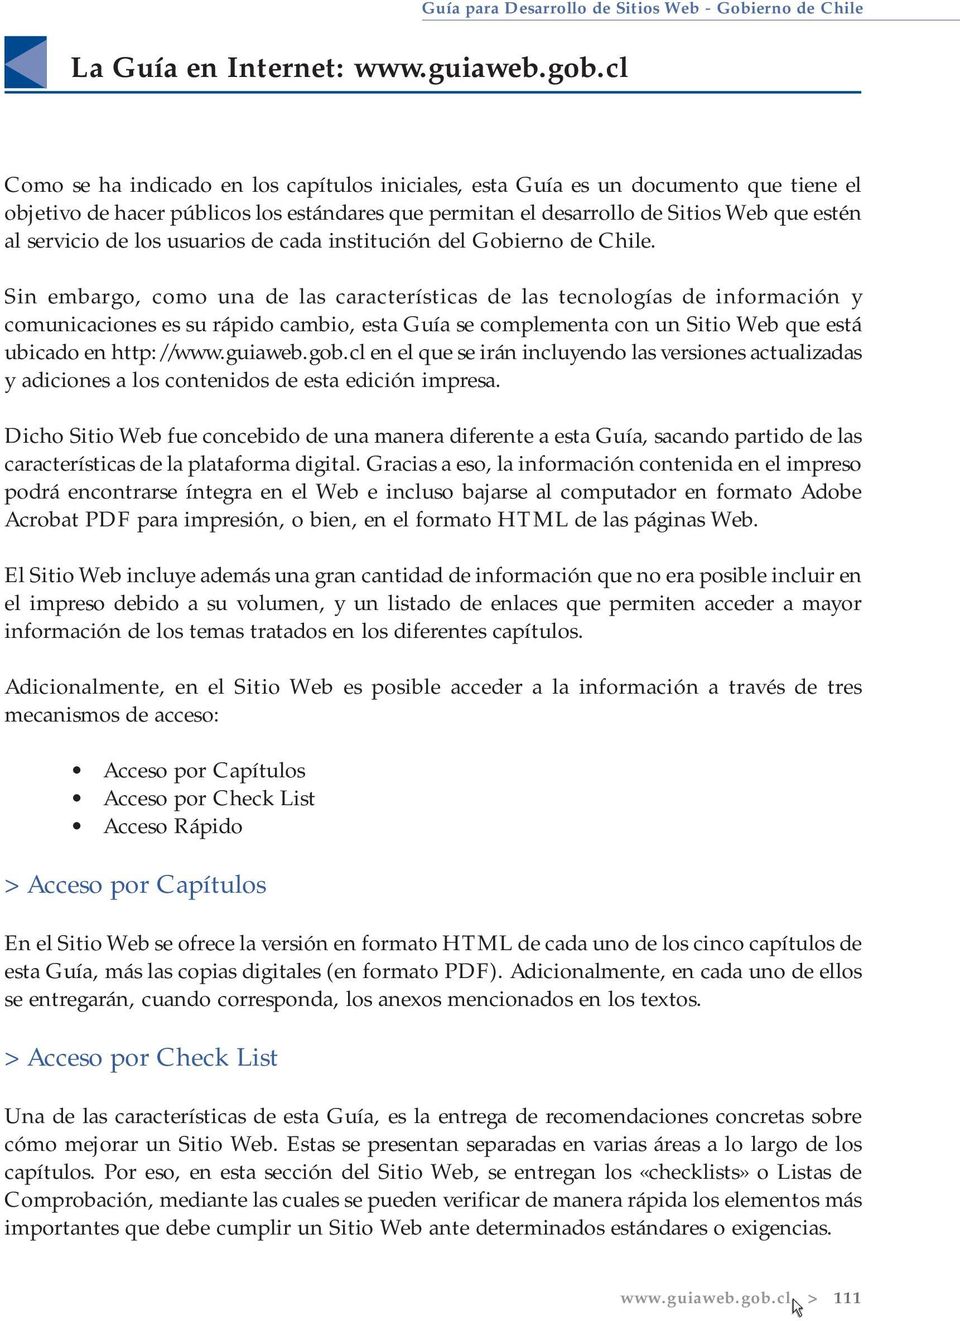 el desarrollo de Sitios Web que estén al servicio de los usuarios de cada institución del Gobierno de Chile.